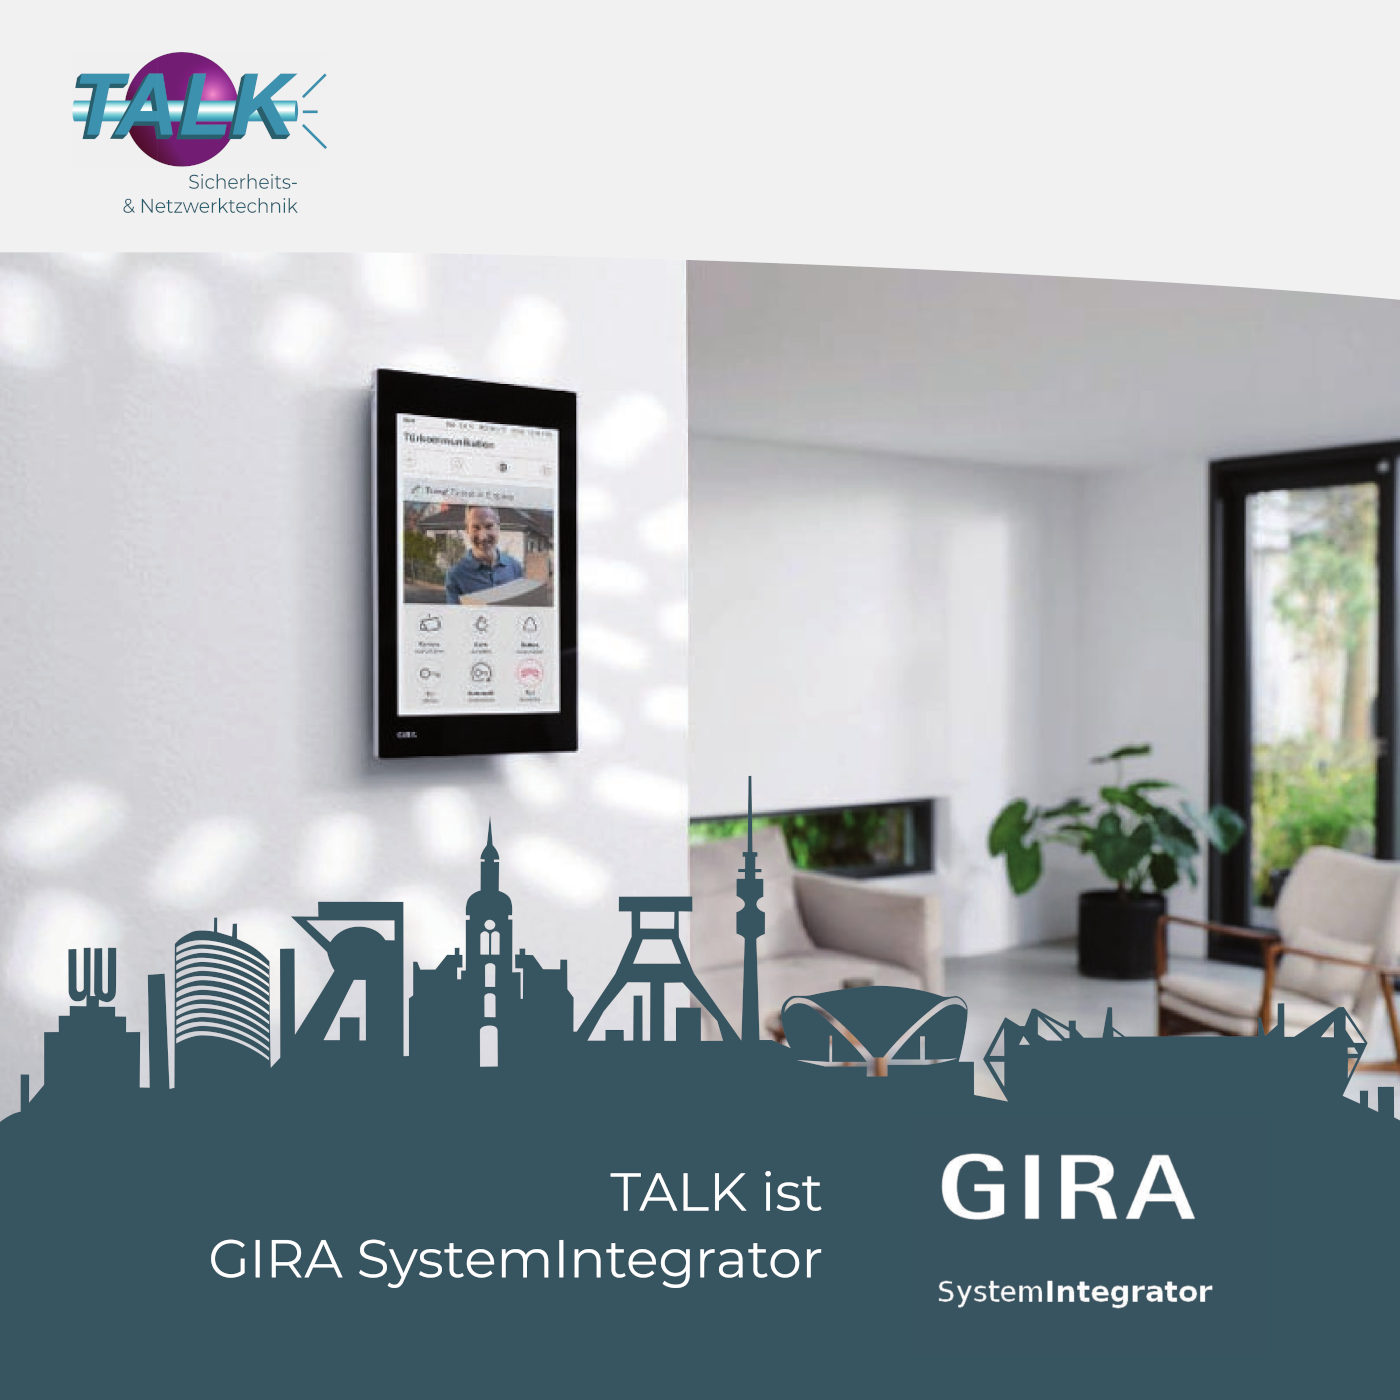 Bild mit dem Titel TALK ist GIRA SystemIntegrator